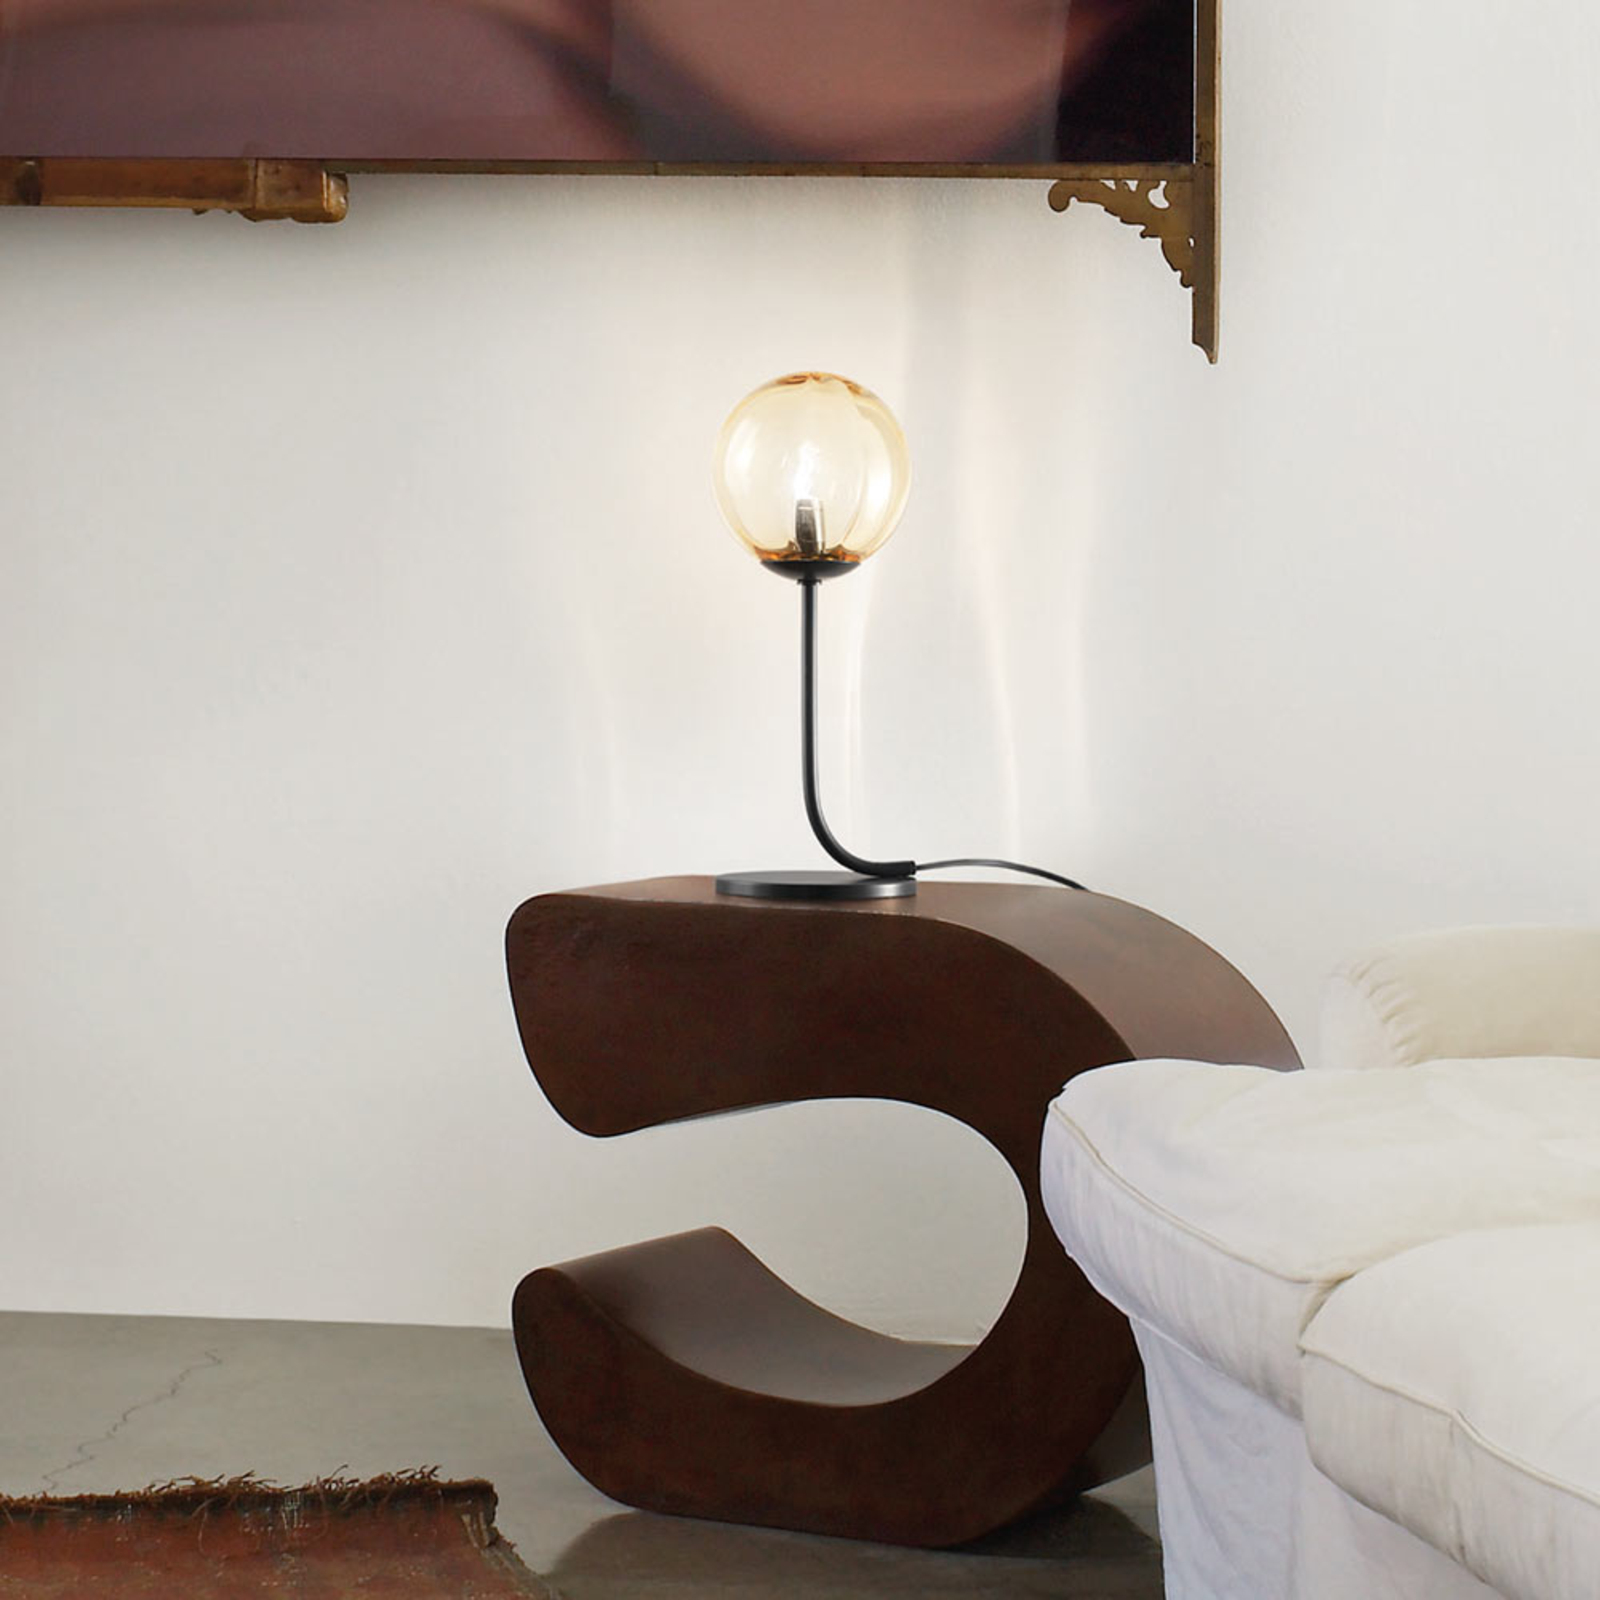 Designová stolní lampa Puppet sklo Murano